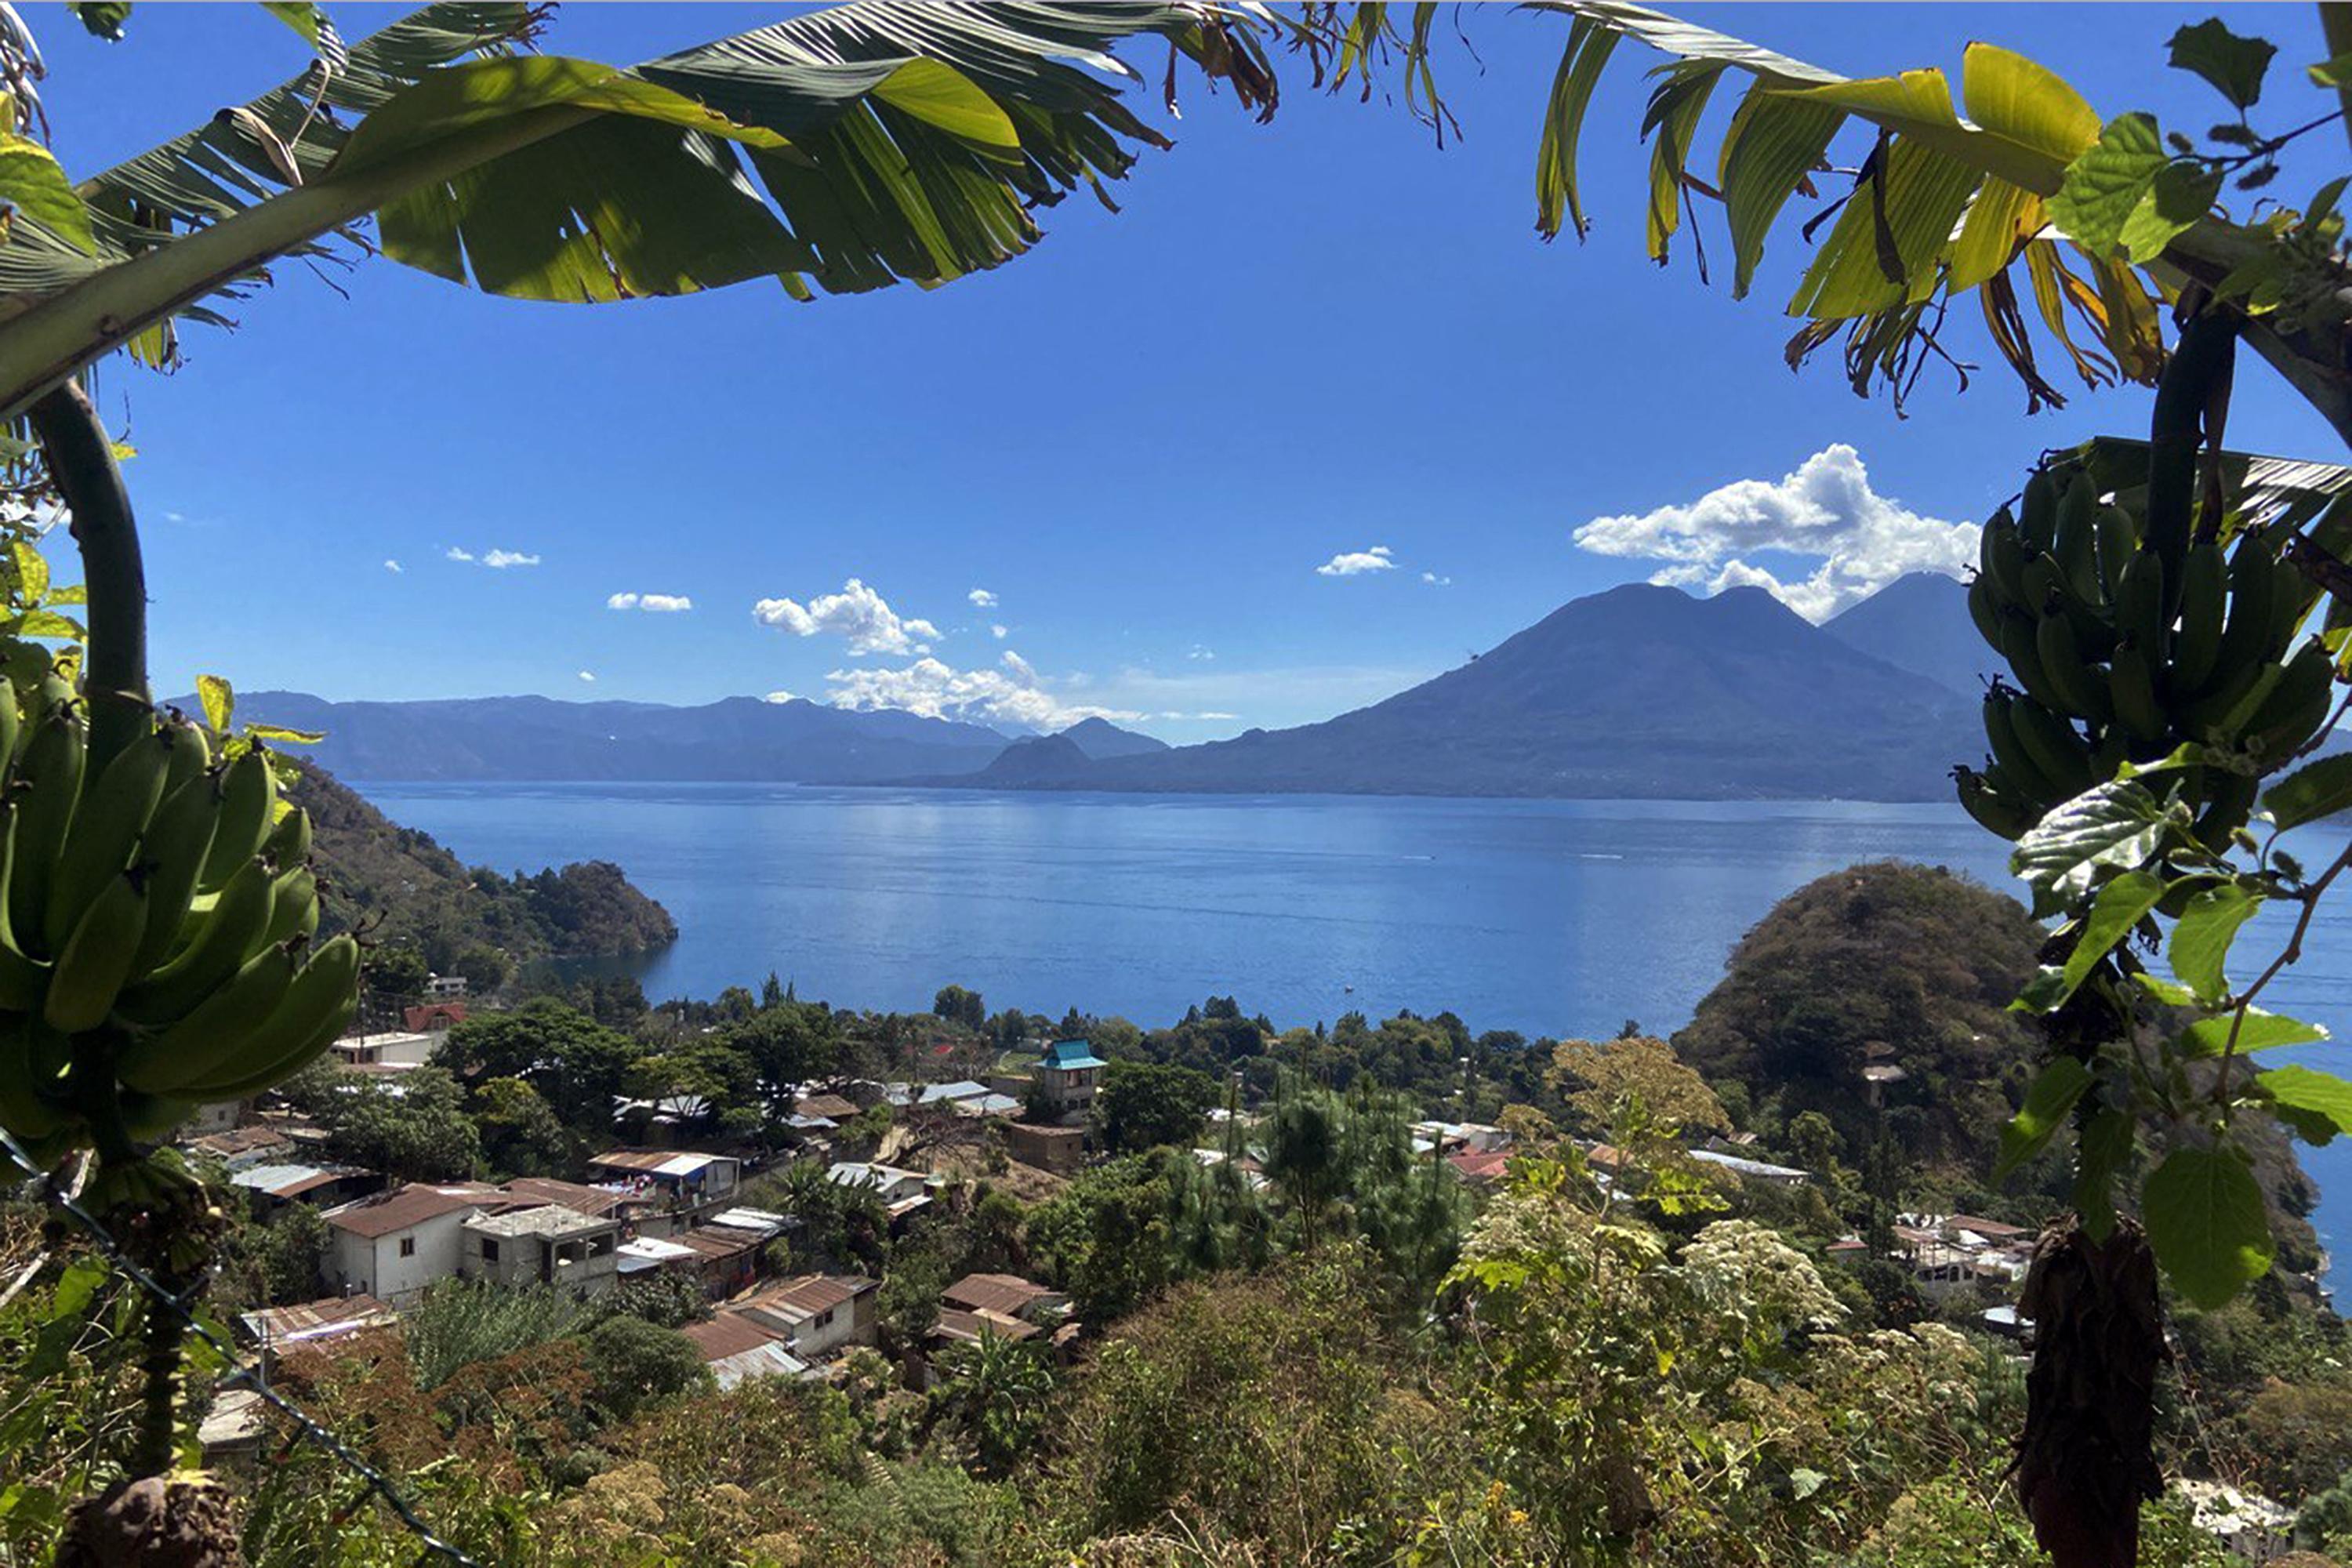 Vista del Lago Atitlán desde el Barrio 2 de San Marcos La Laguna. Los residentes kaqchikel llaman el lugar donde se tomó esta foto Tz